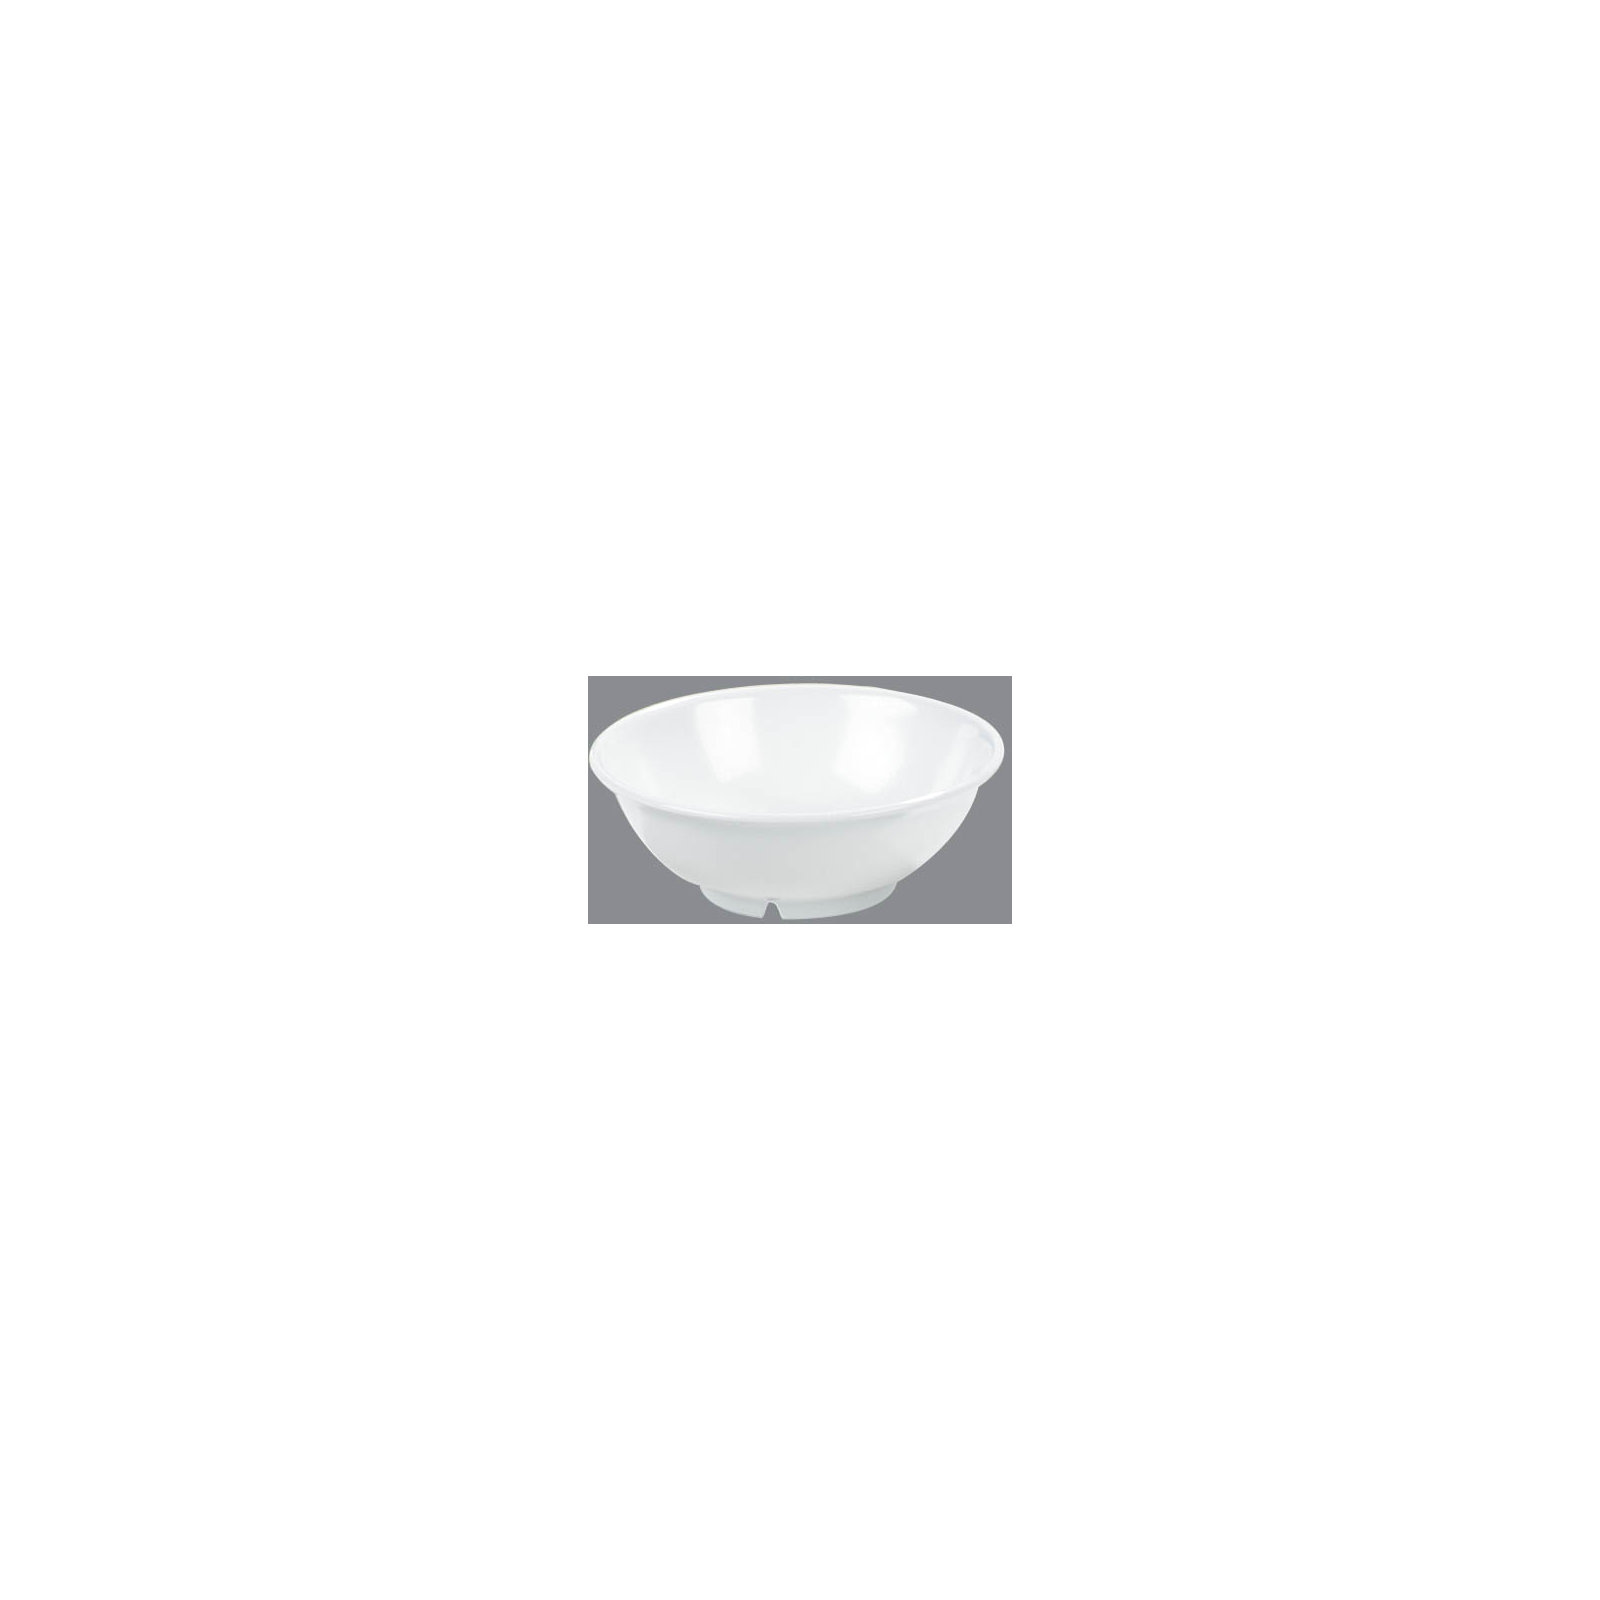 Abattant WC MDF Orbella blanc argent - Blanc - Kiabi - 24.01€